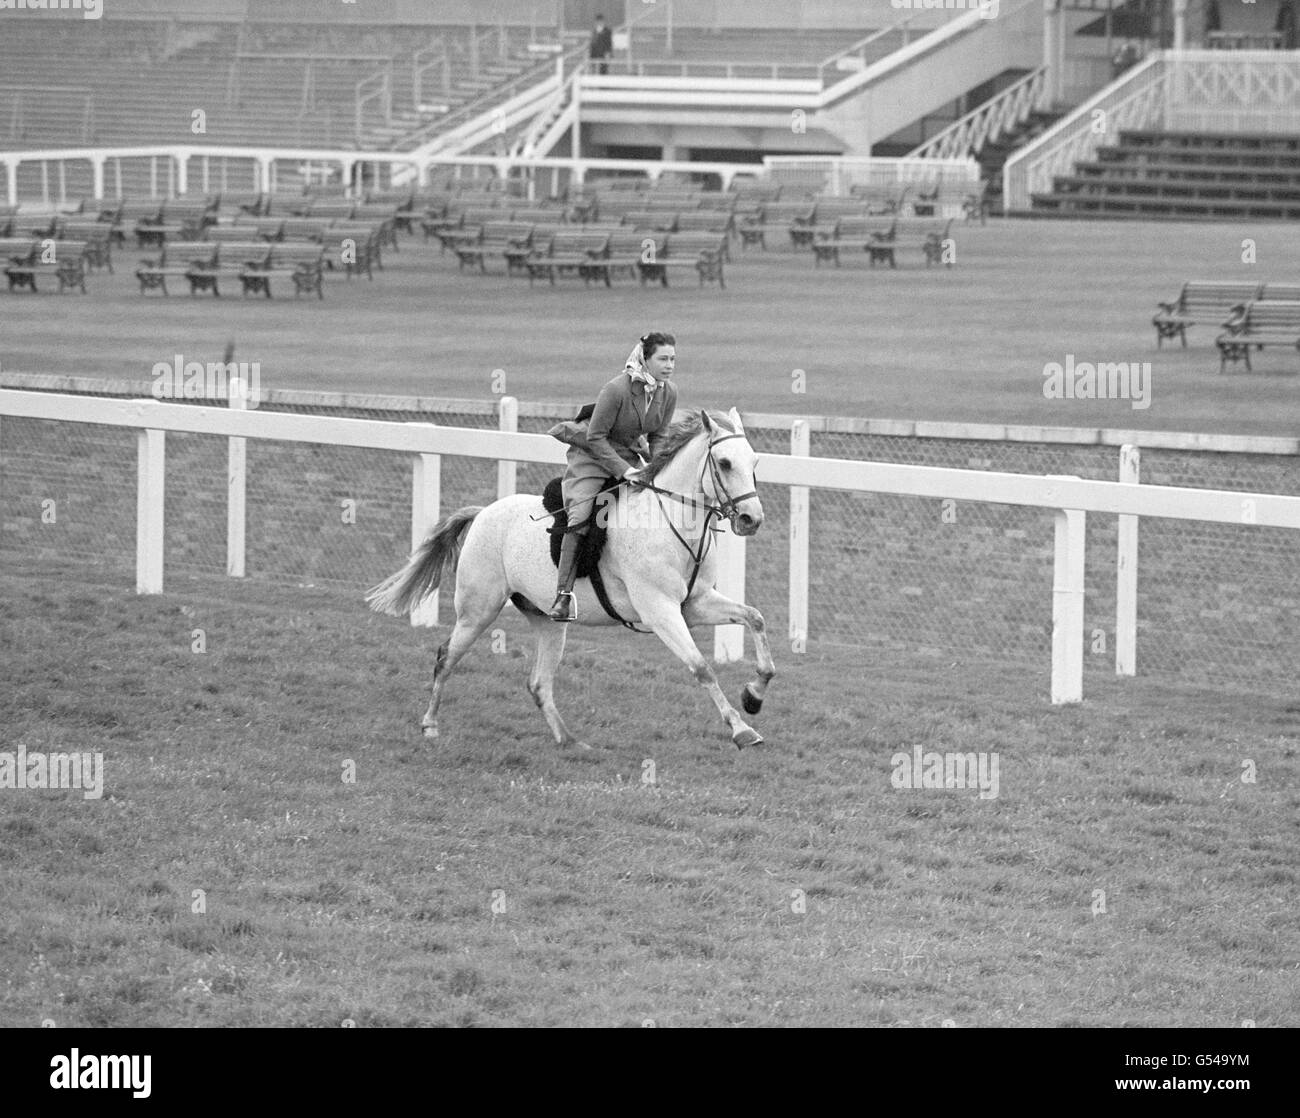 Pferderennen - Queen Elizabeth II - Ascot Racecourse. Königin Elizabeth II galoppiert auf einem grauen Pferd namens „Surprise“ auf der Rennbahn Ascot. Stockfoto